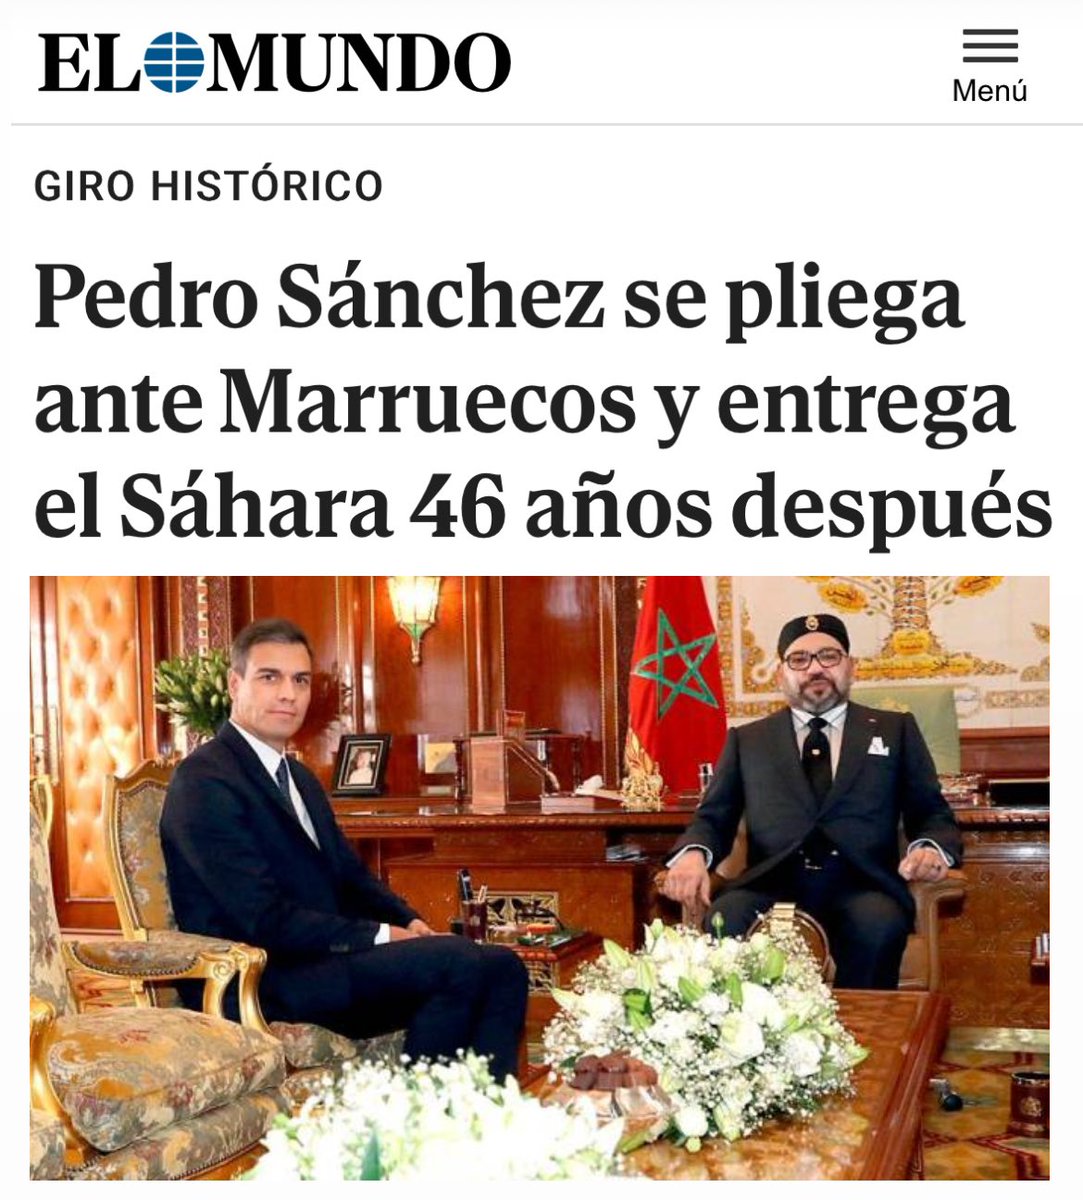 Pedro Sánchez dice que iniciará una guerra contra los bulos, pues que empiece por rectificar el mayor bulo creado por el y su gobierno apoyando una supuesta marroquinidad del Sáhara que nunca existió, no existe ni existirá.